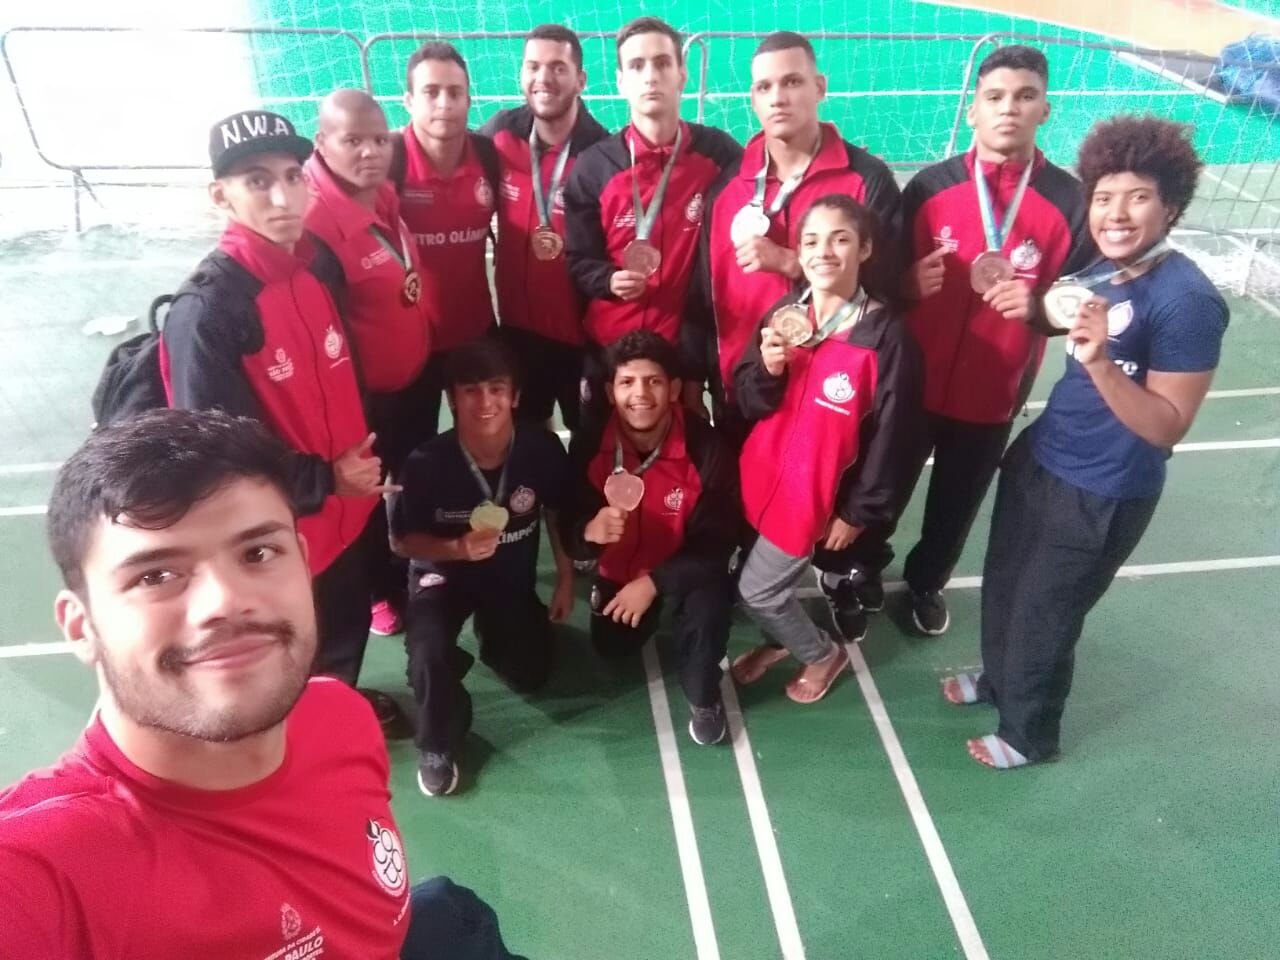 Equipe da Luta Olímpica posa para foto com suas medalhas. Todos estão com o agasalho vermelho do COTP, e o professor está à frente, batendo a selfie.